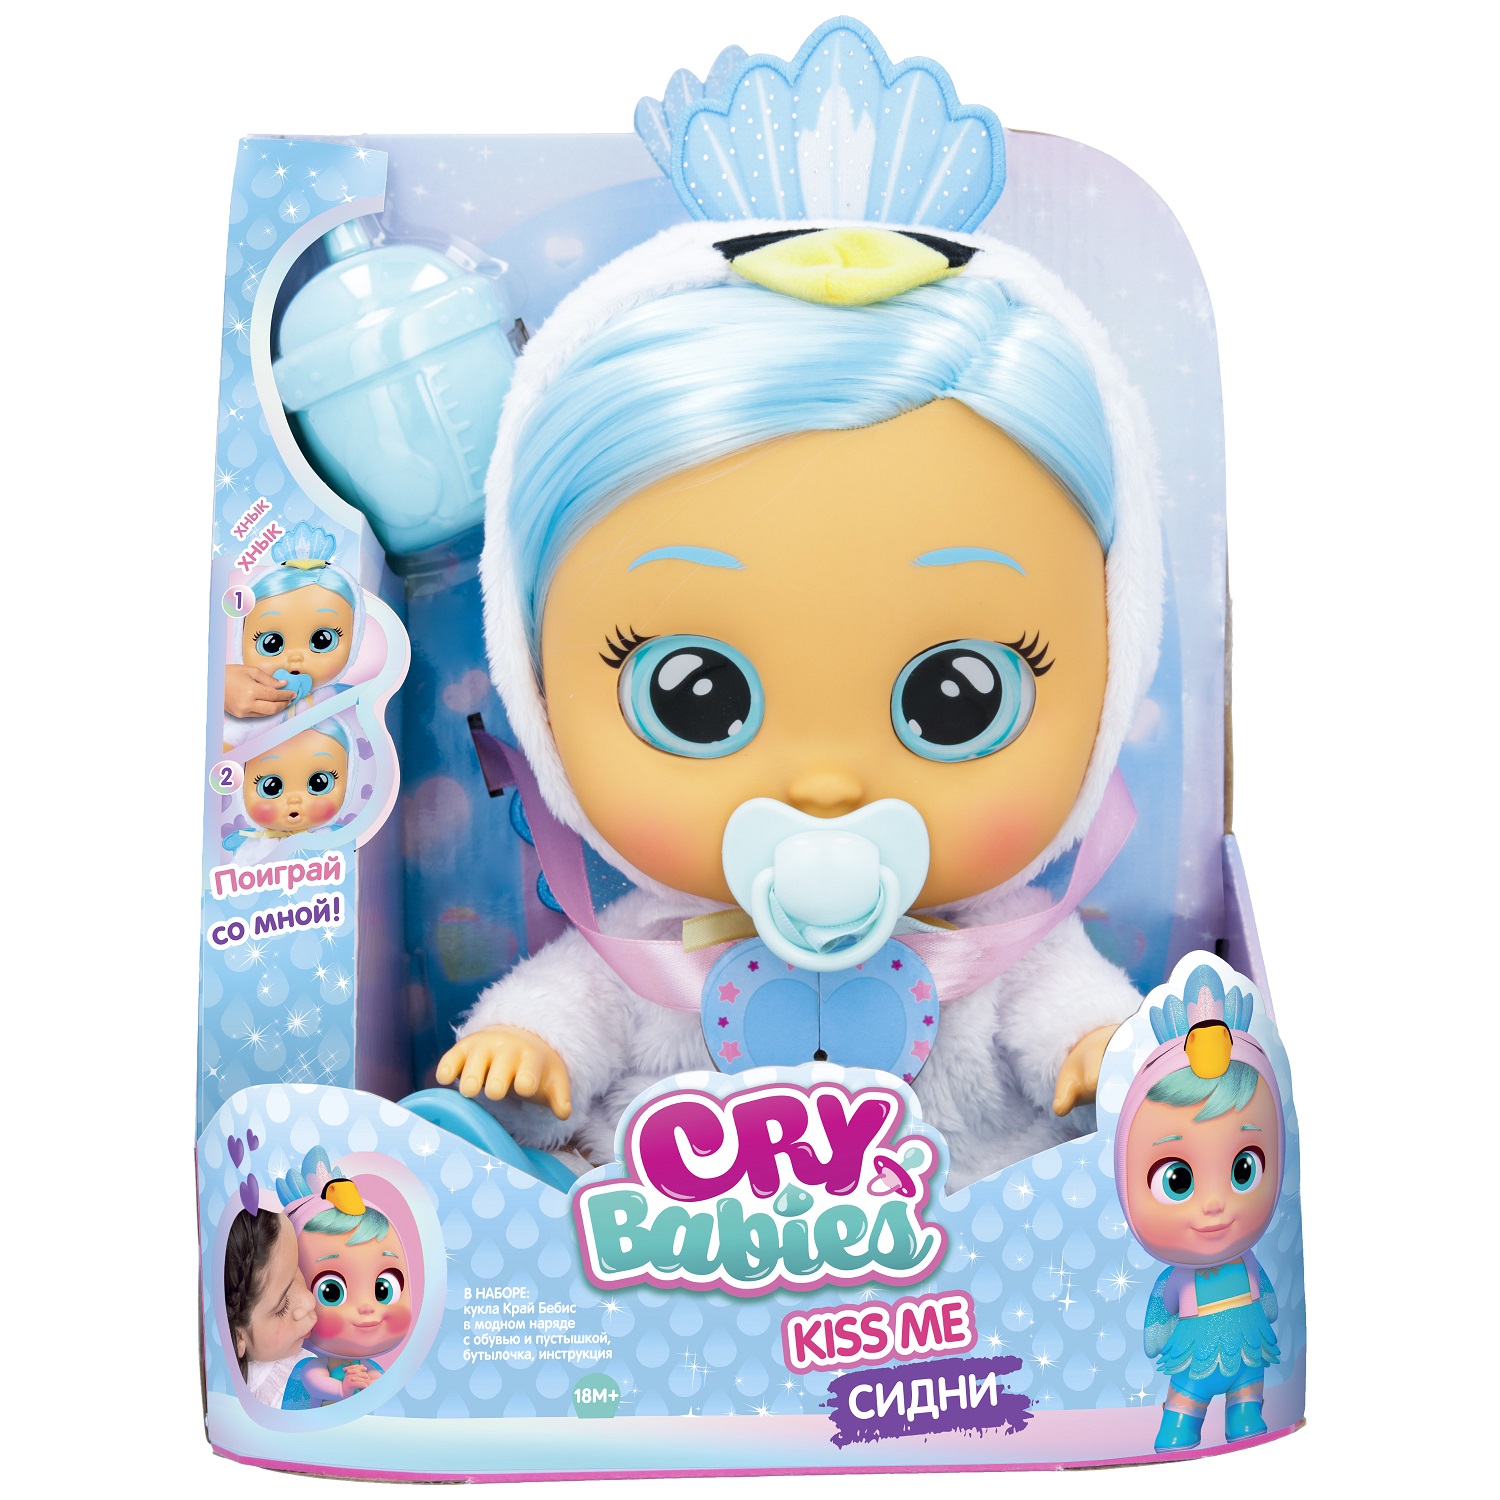 Кукла Cry Babies Сидни Поцелуй меня, интерактивная, плачущая, 40890